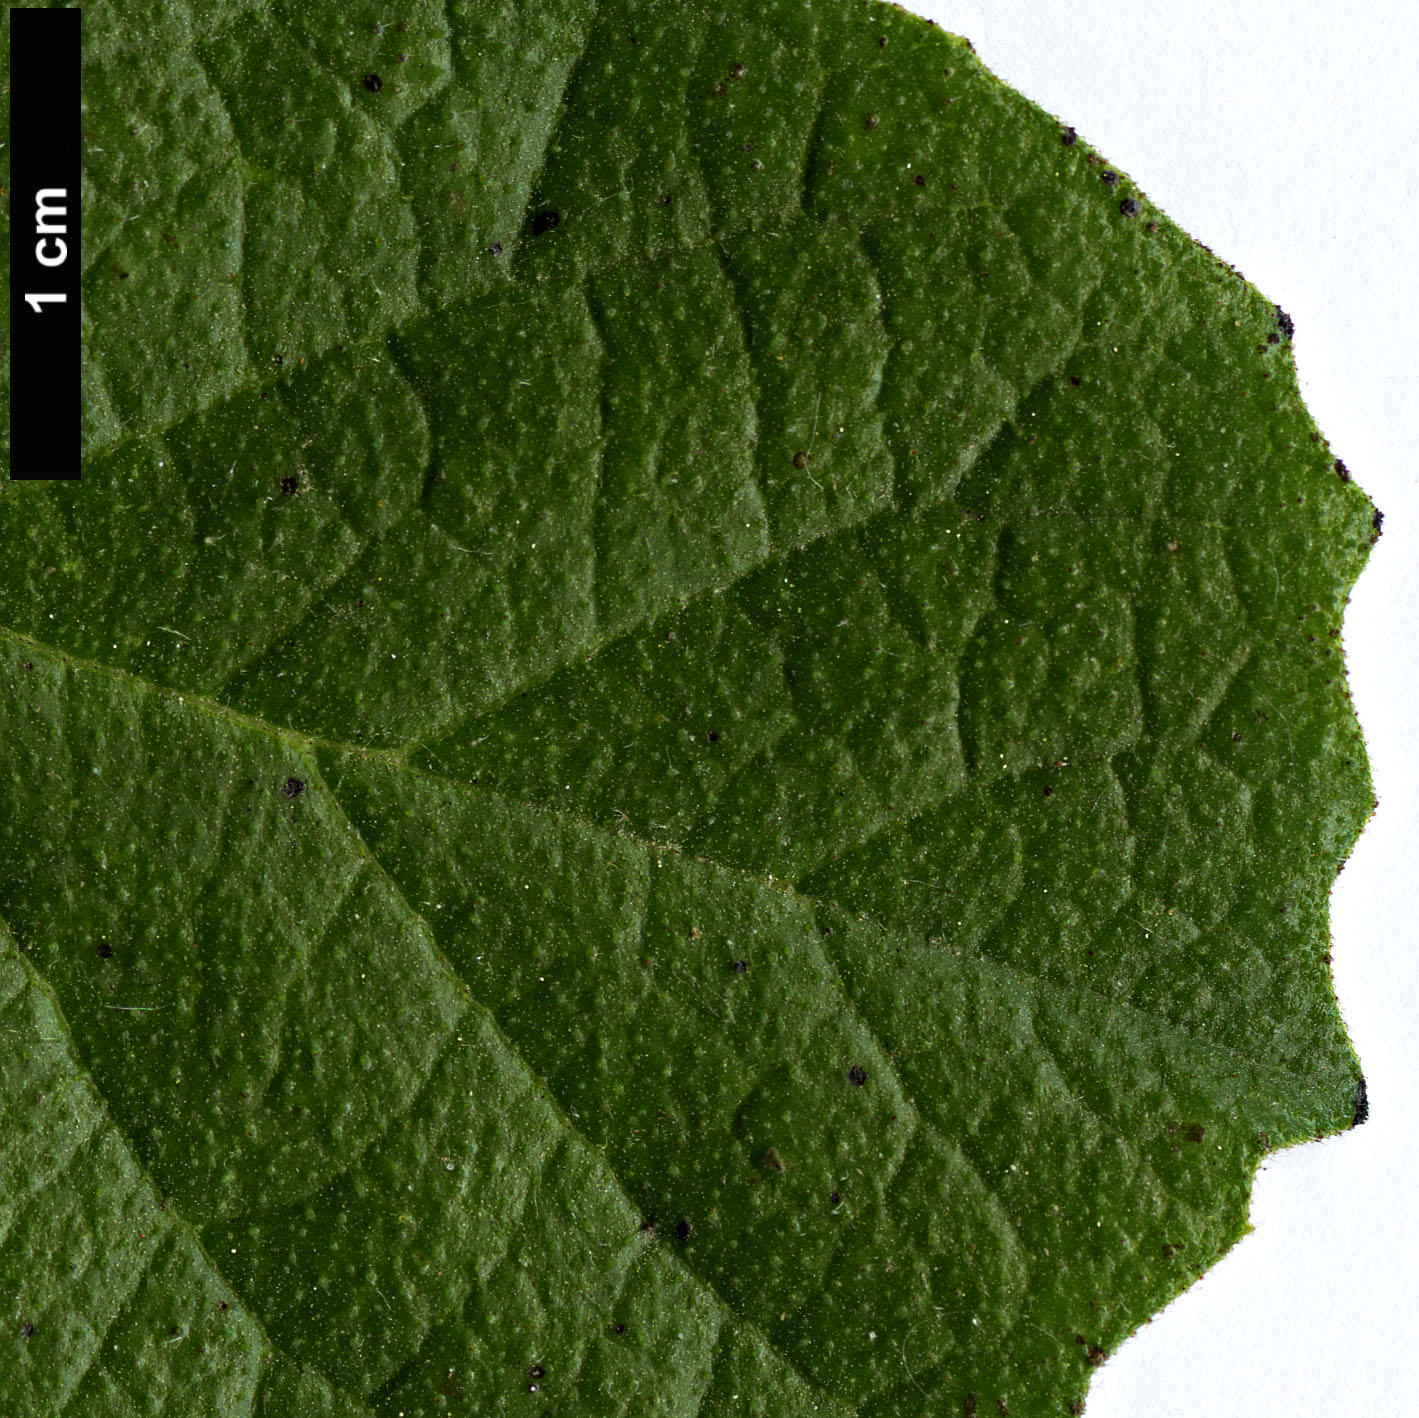 High resolution image: Family: Boraginaceae - Genus: Ehretia - Taxon: obtusifolia